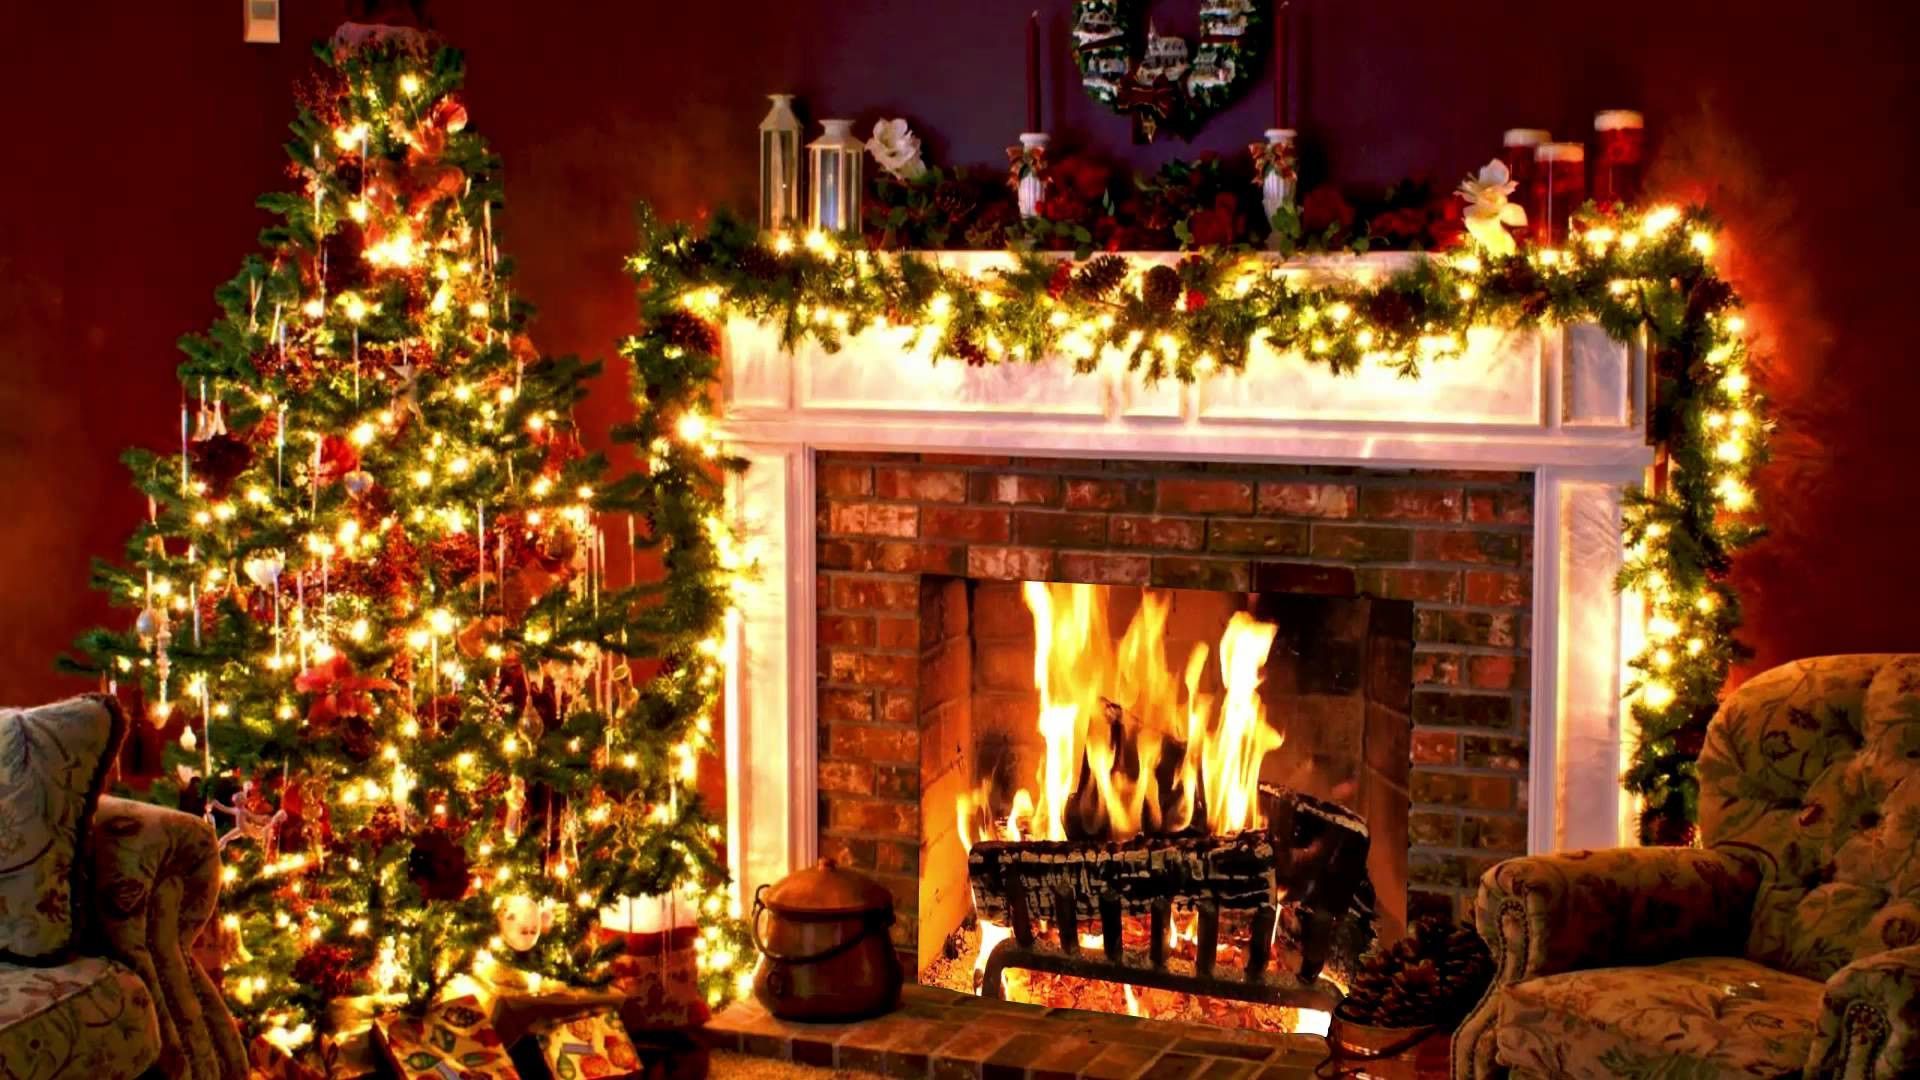 CHRISTMAS WALLPAPERS. Christmas tree and fireplace, Christmas fireplace, Christmas music